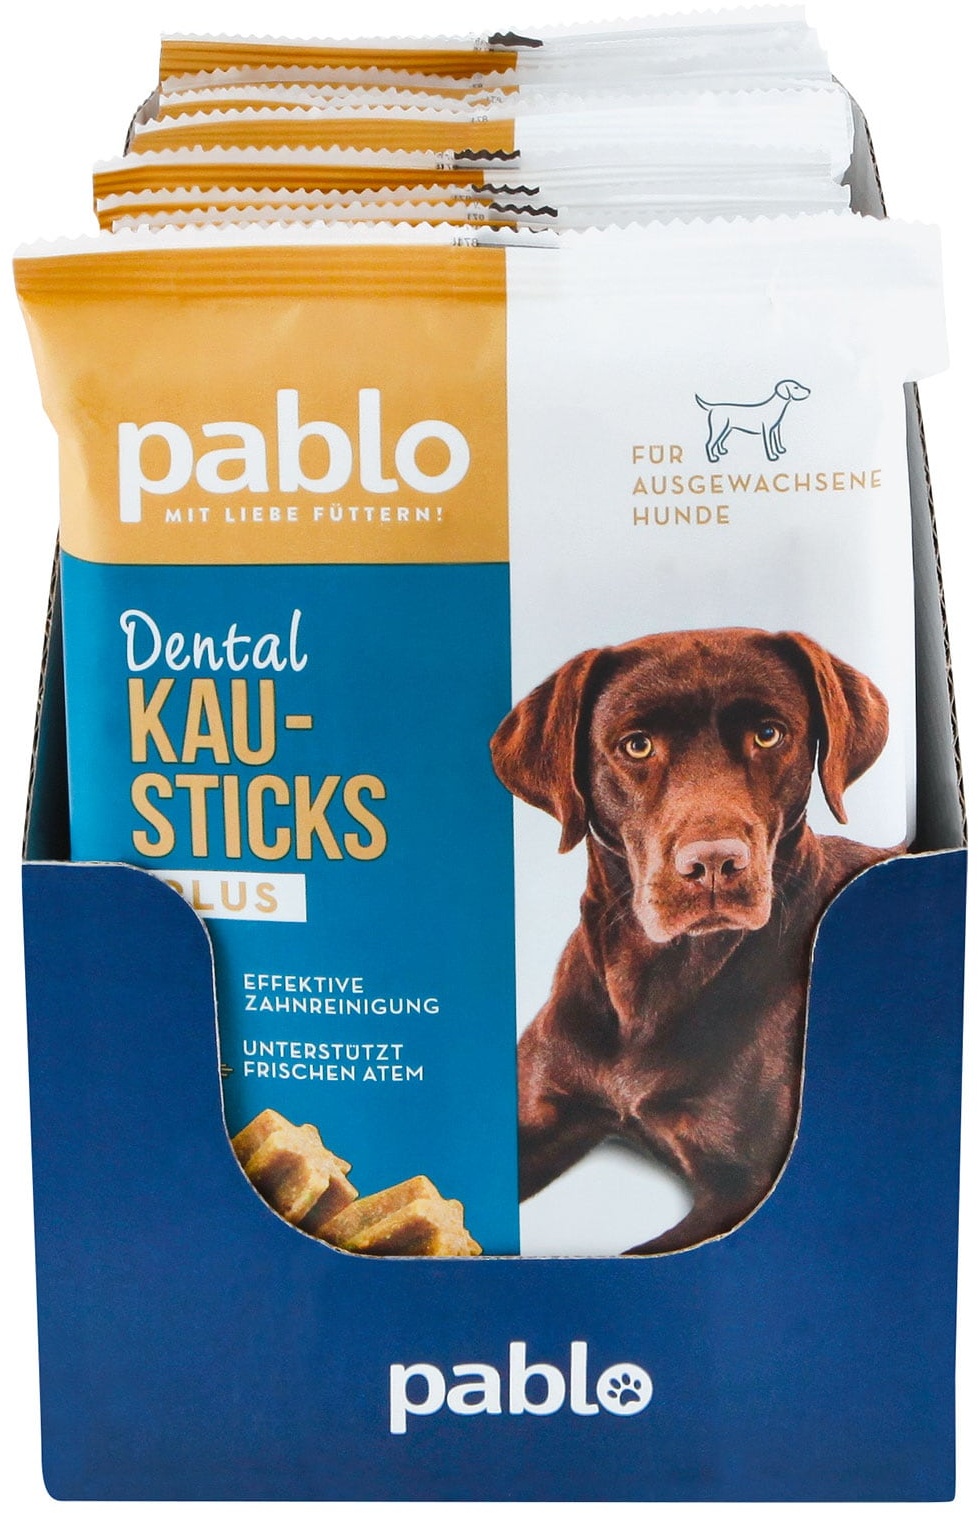 Pablo Dental Kausticks 210 g, 18er Pack